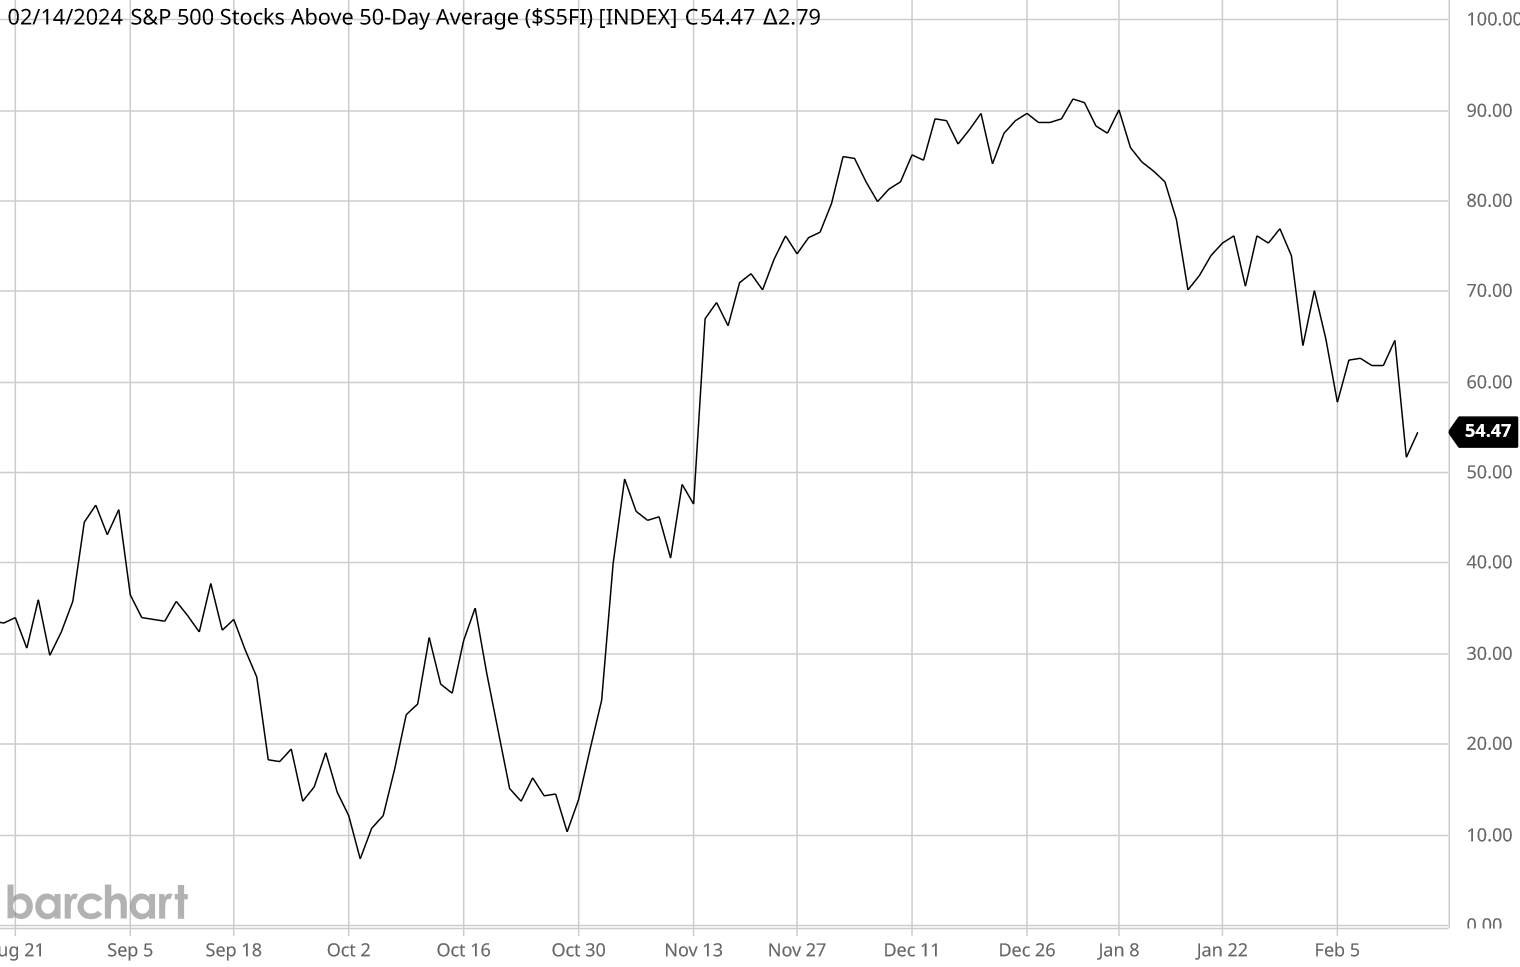 Nur noch etwas mehr als 54 % der Aktien des S&P 500 notieren oberhalb des 50-Tage-Durchschnitts, obwohl der Index weiter zulegen konnte